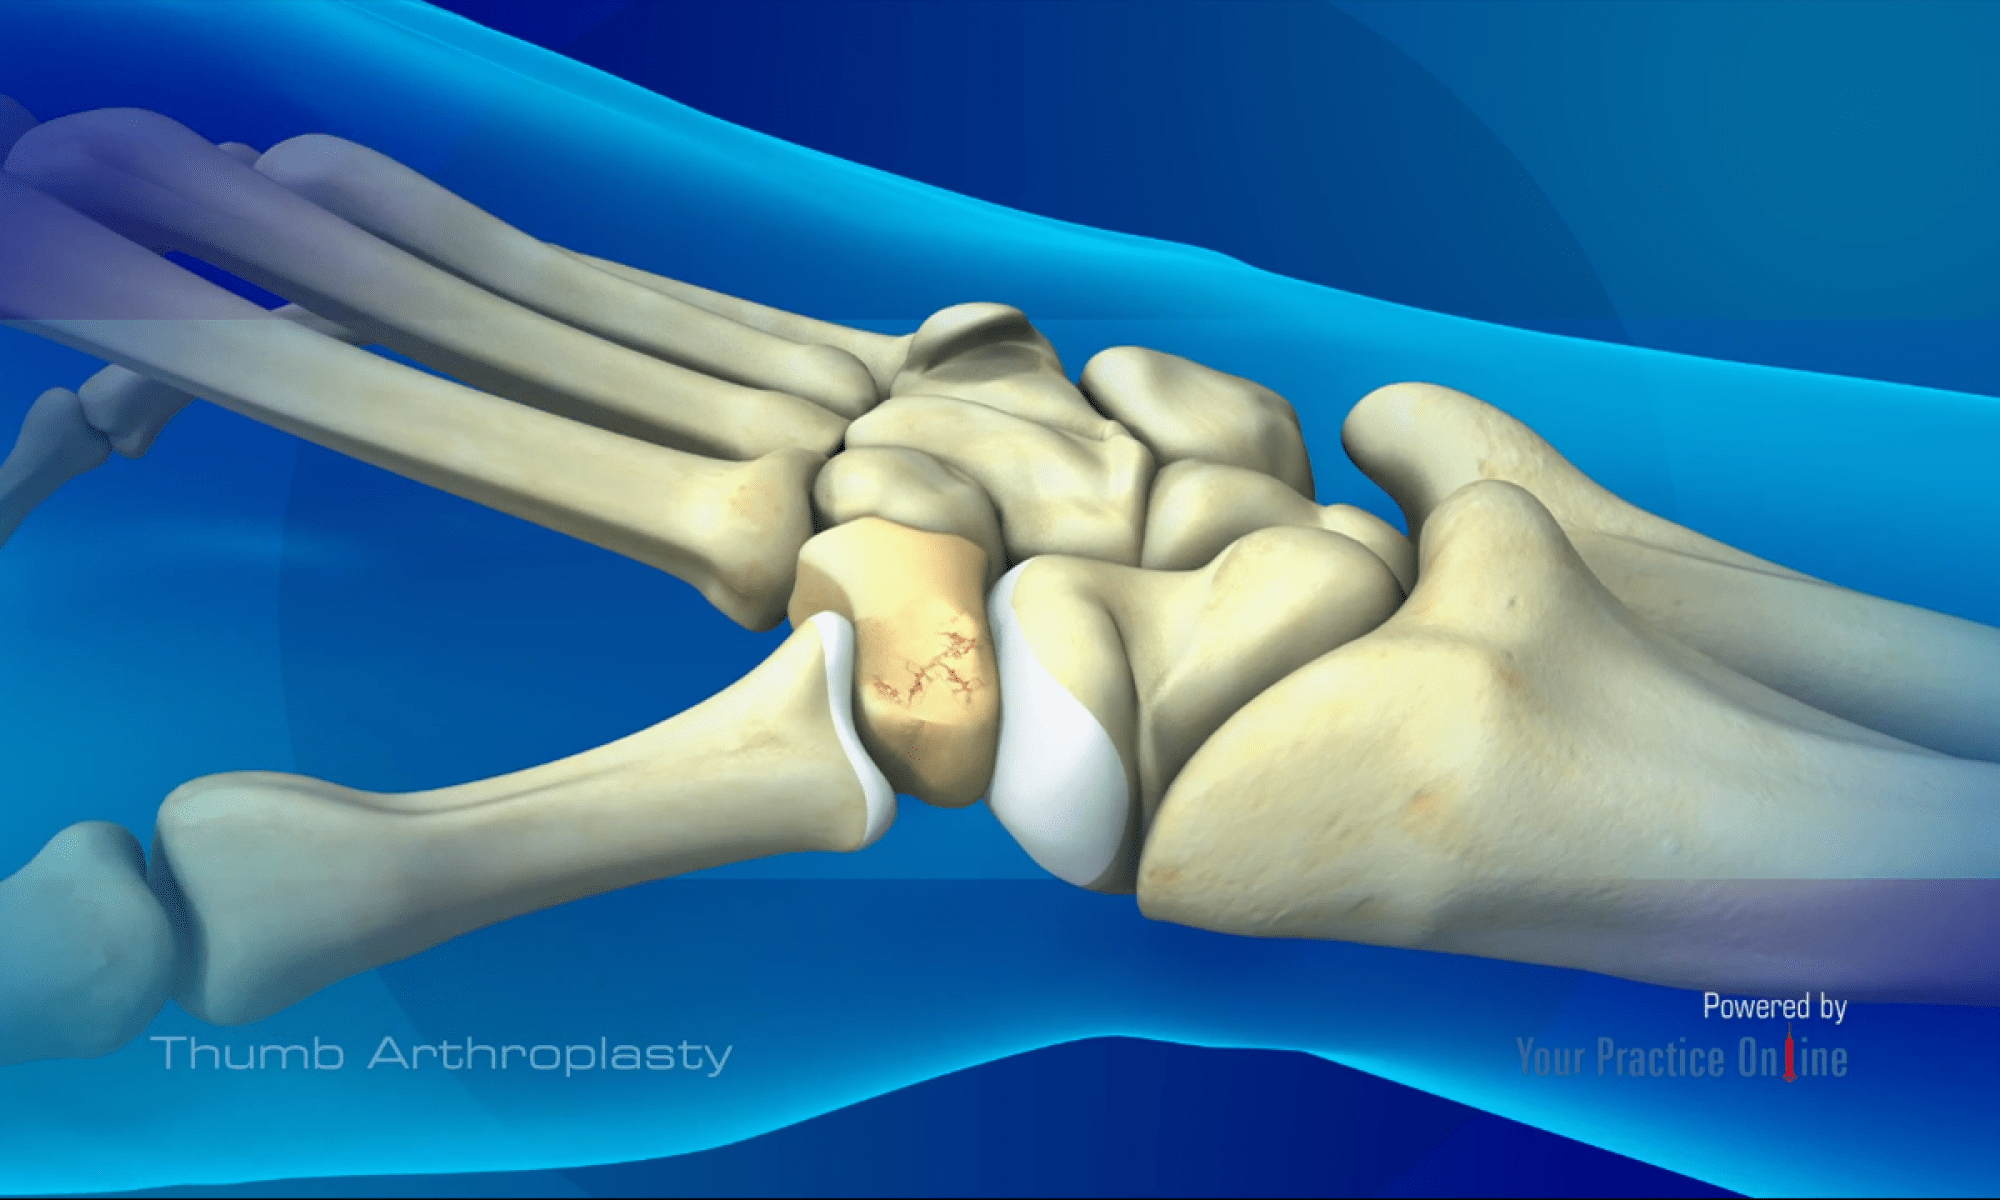 Thumb Arthroplasty Proliance Orthopedic 0960